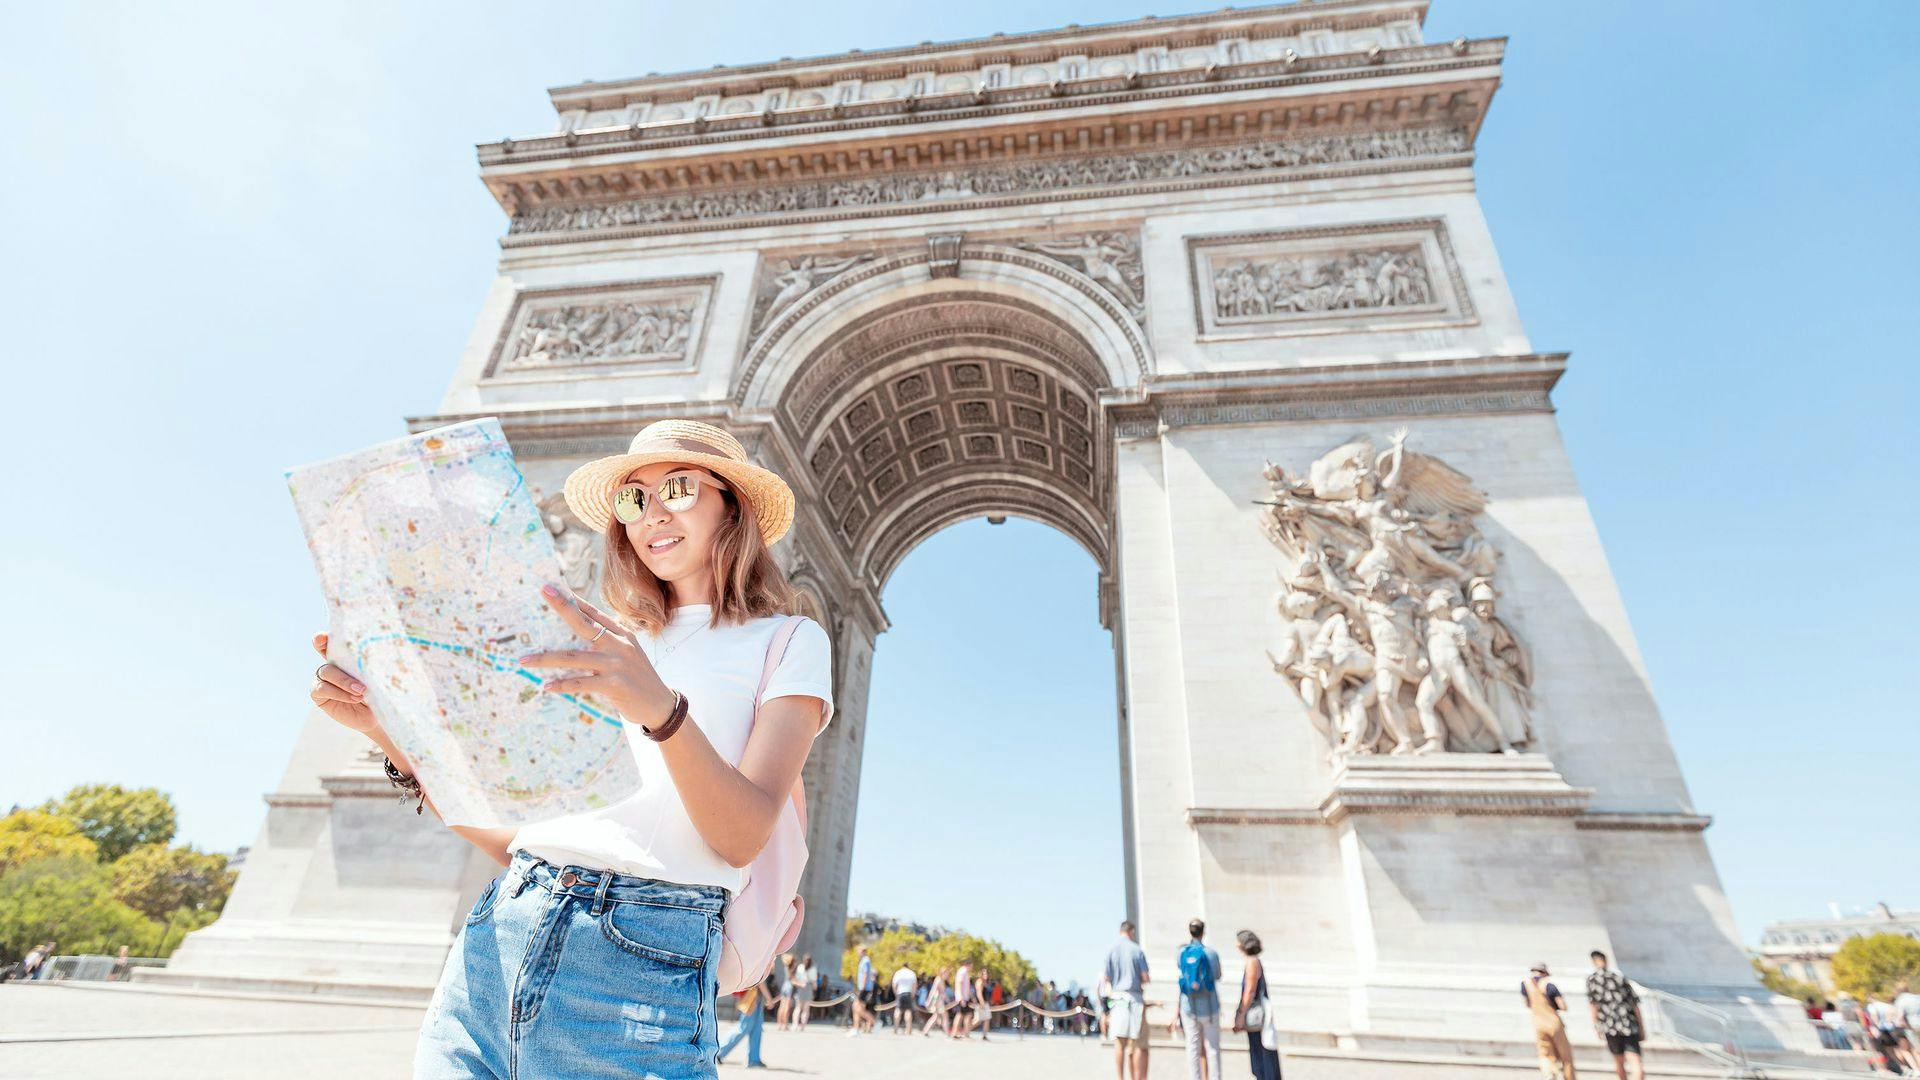 Arc de Triomphe-tickets met audiotour via app op mobiele telefoon